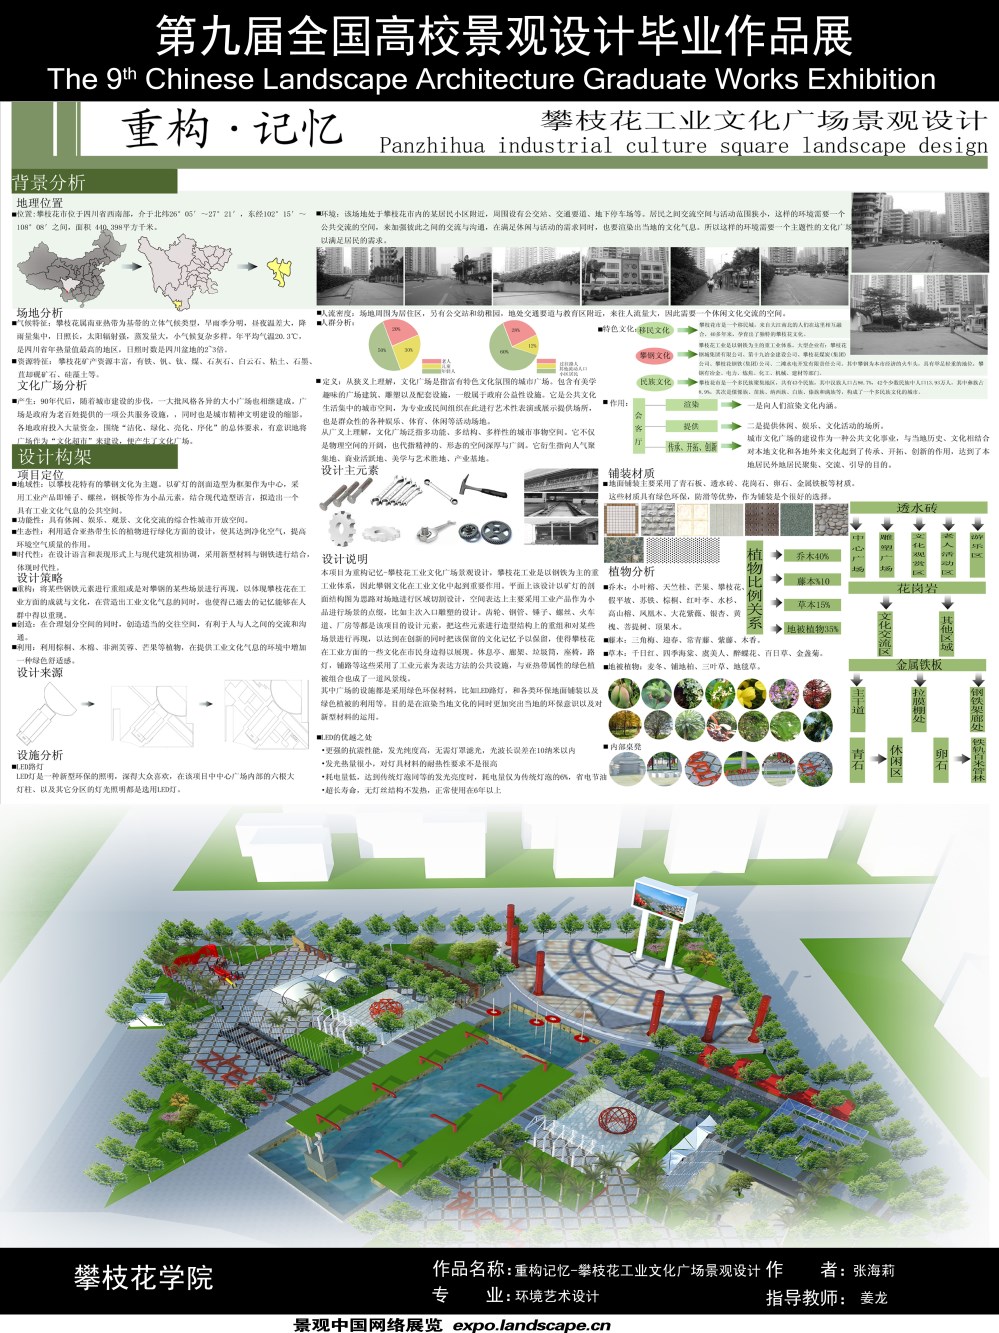 重构记忆-攀枝花工业文化广场设计-1